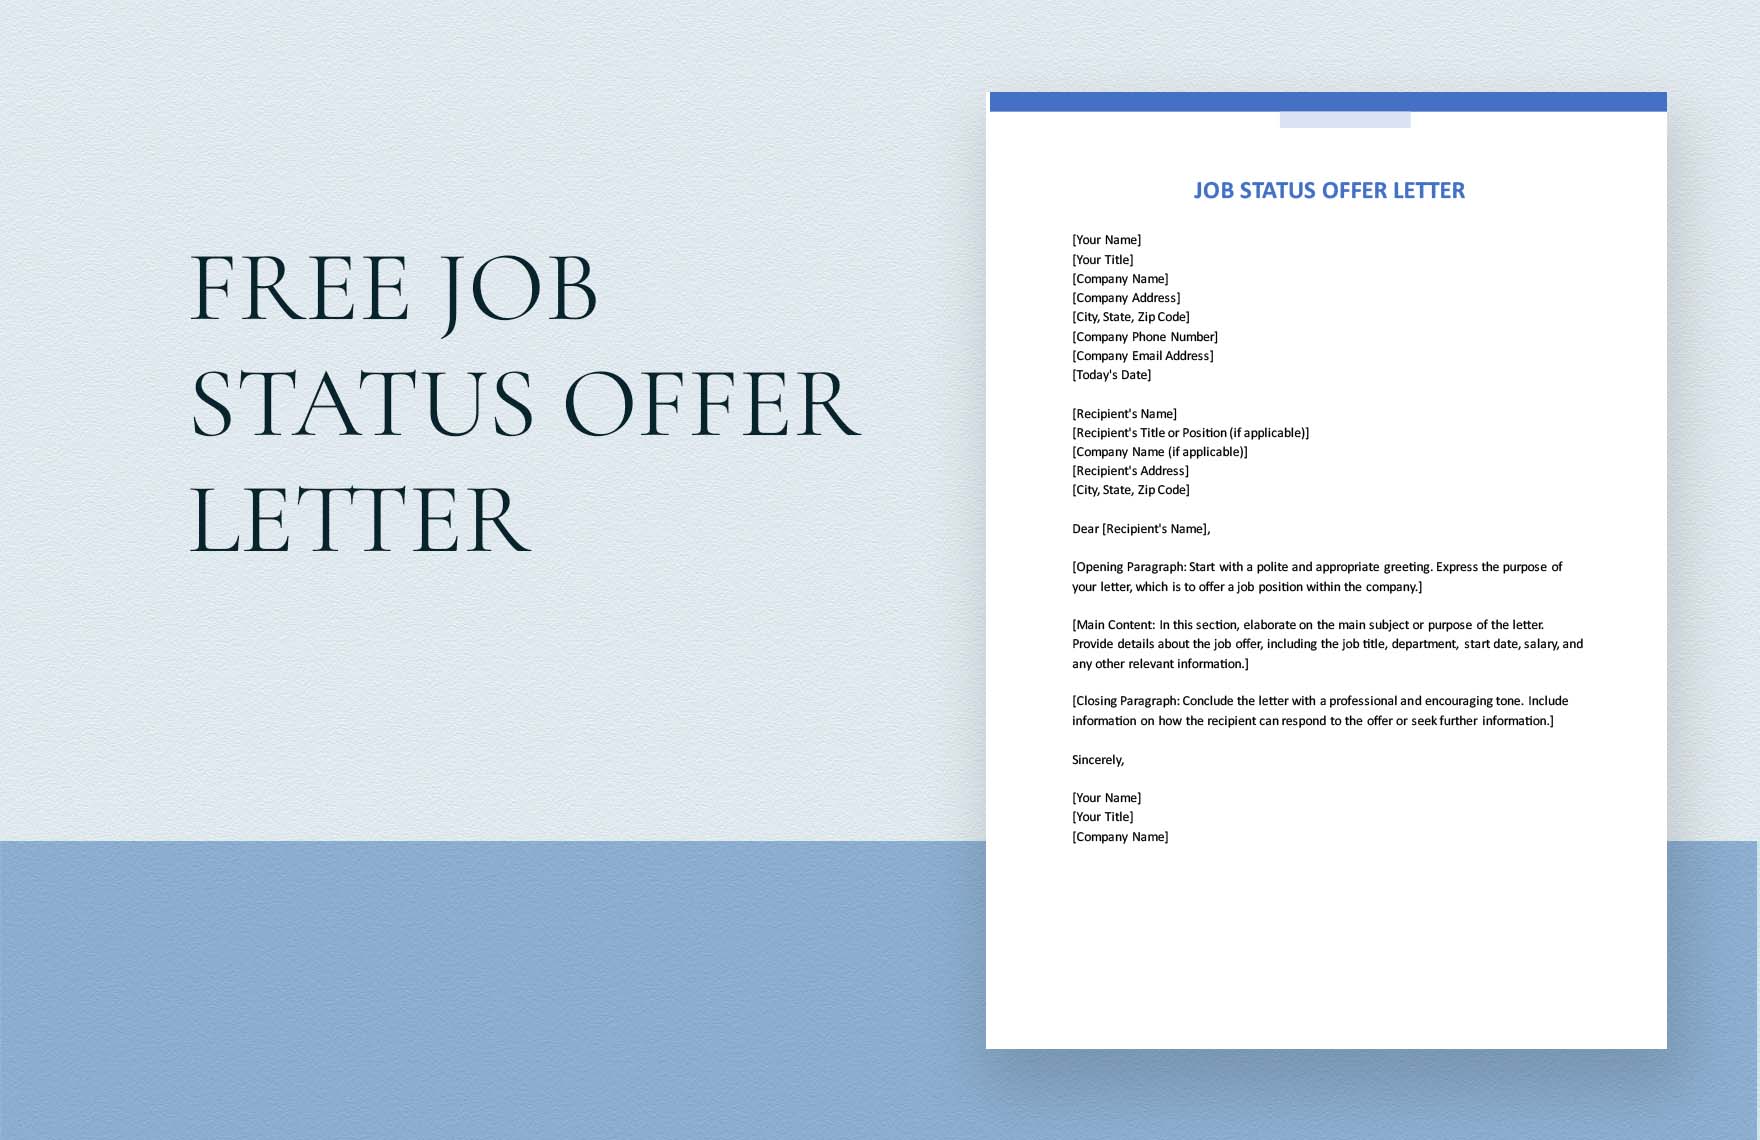 Job Status Offer Letter